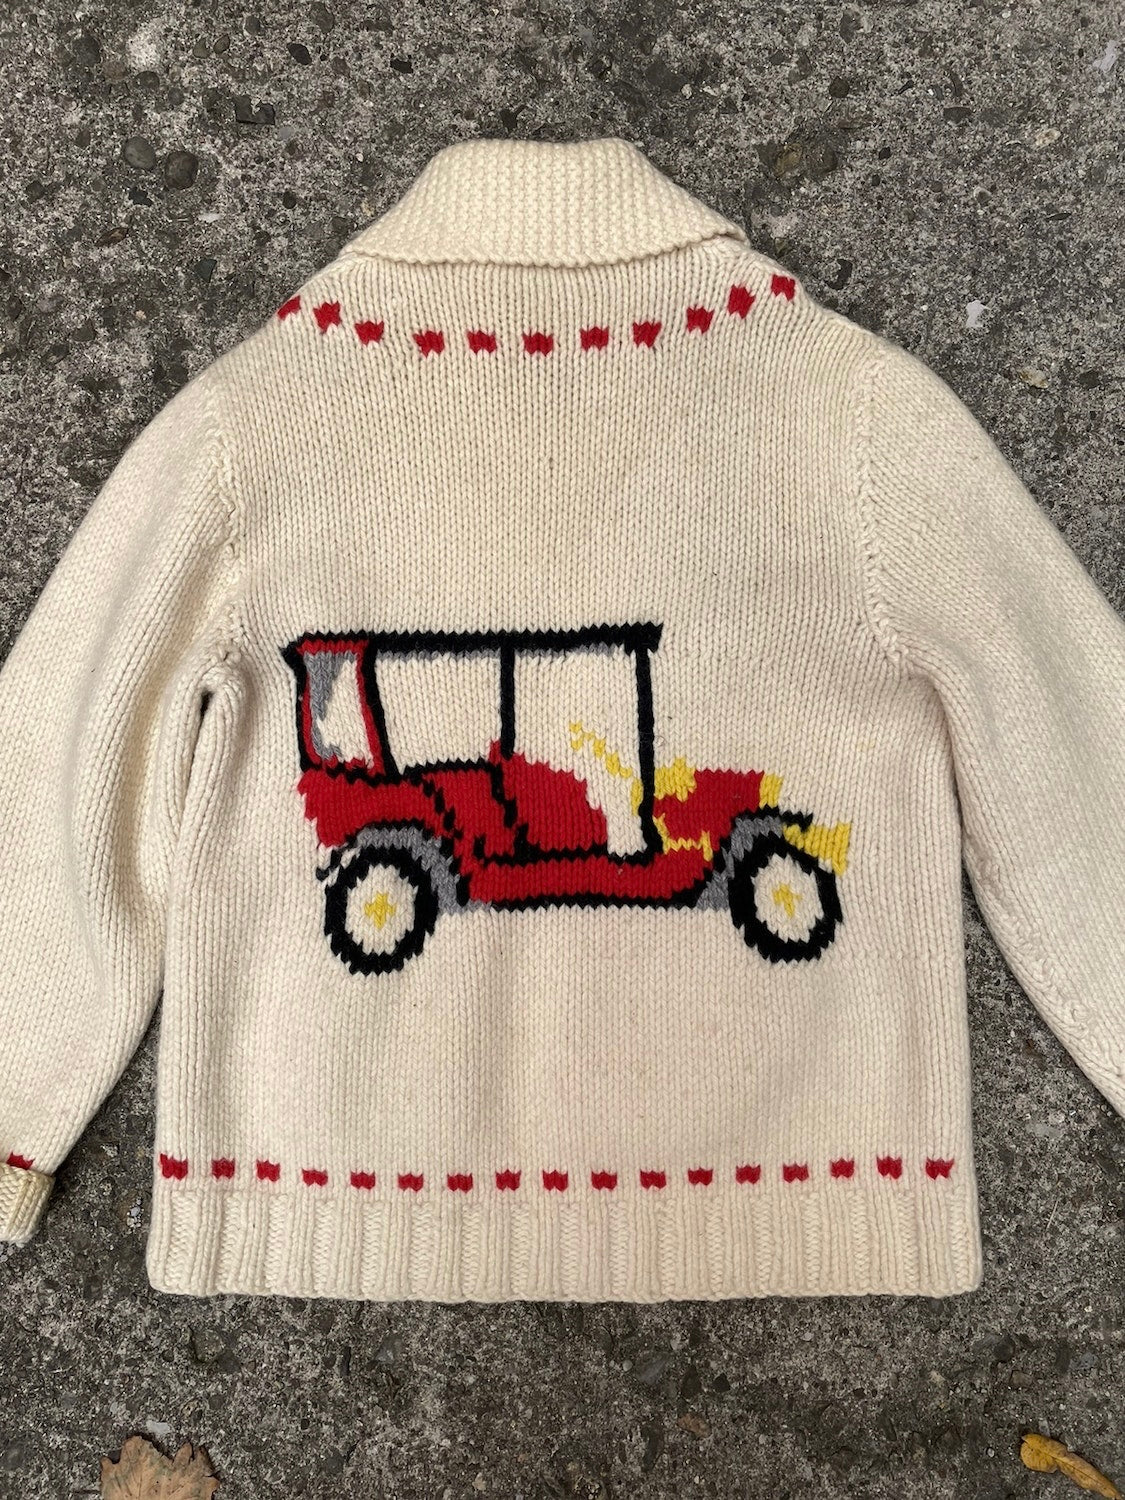 1950's Model T Car Cowichan Knit Sweater - XL